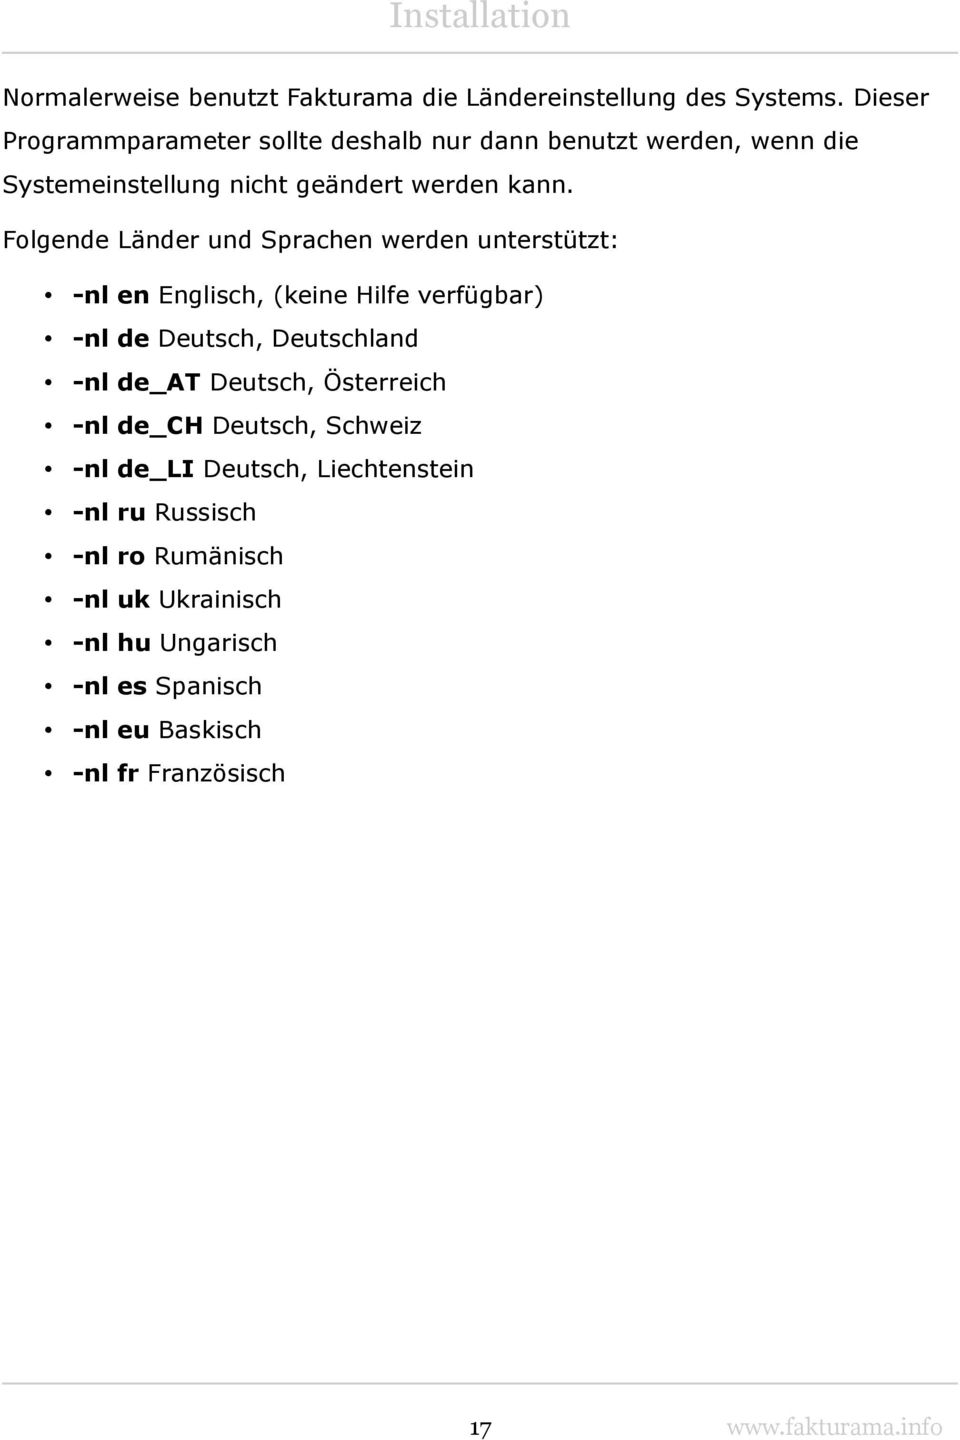 Folgende Länder und Sprachen werden unterstützt: -nl en Englisch, (keine Hilfe verfügbar) -nl de Deutsch, Deutschland -nl de_at